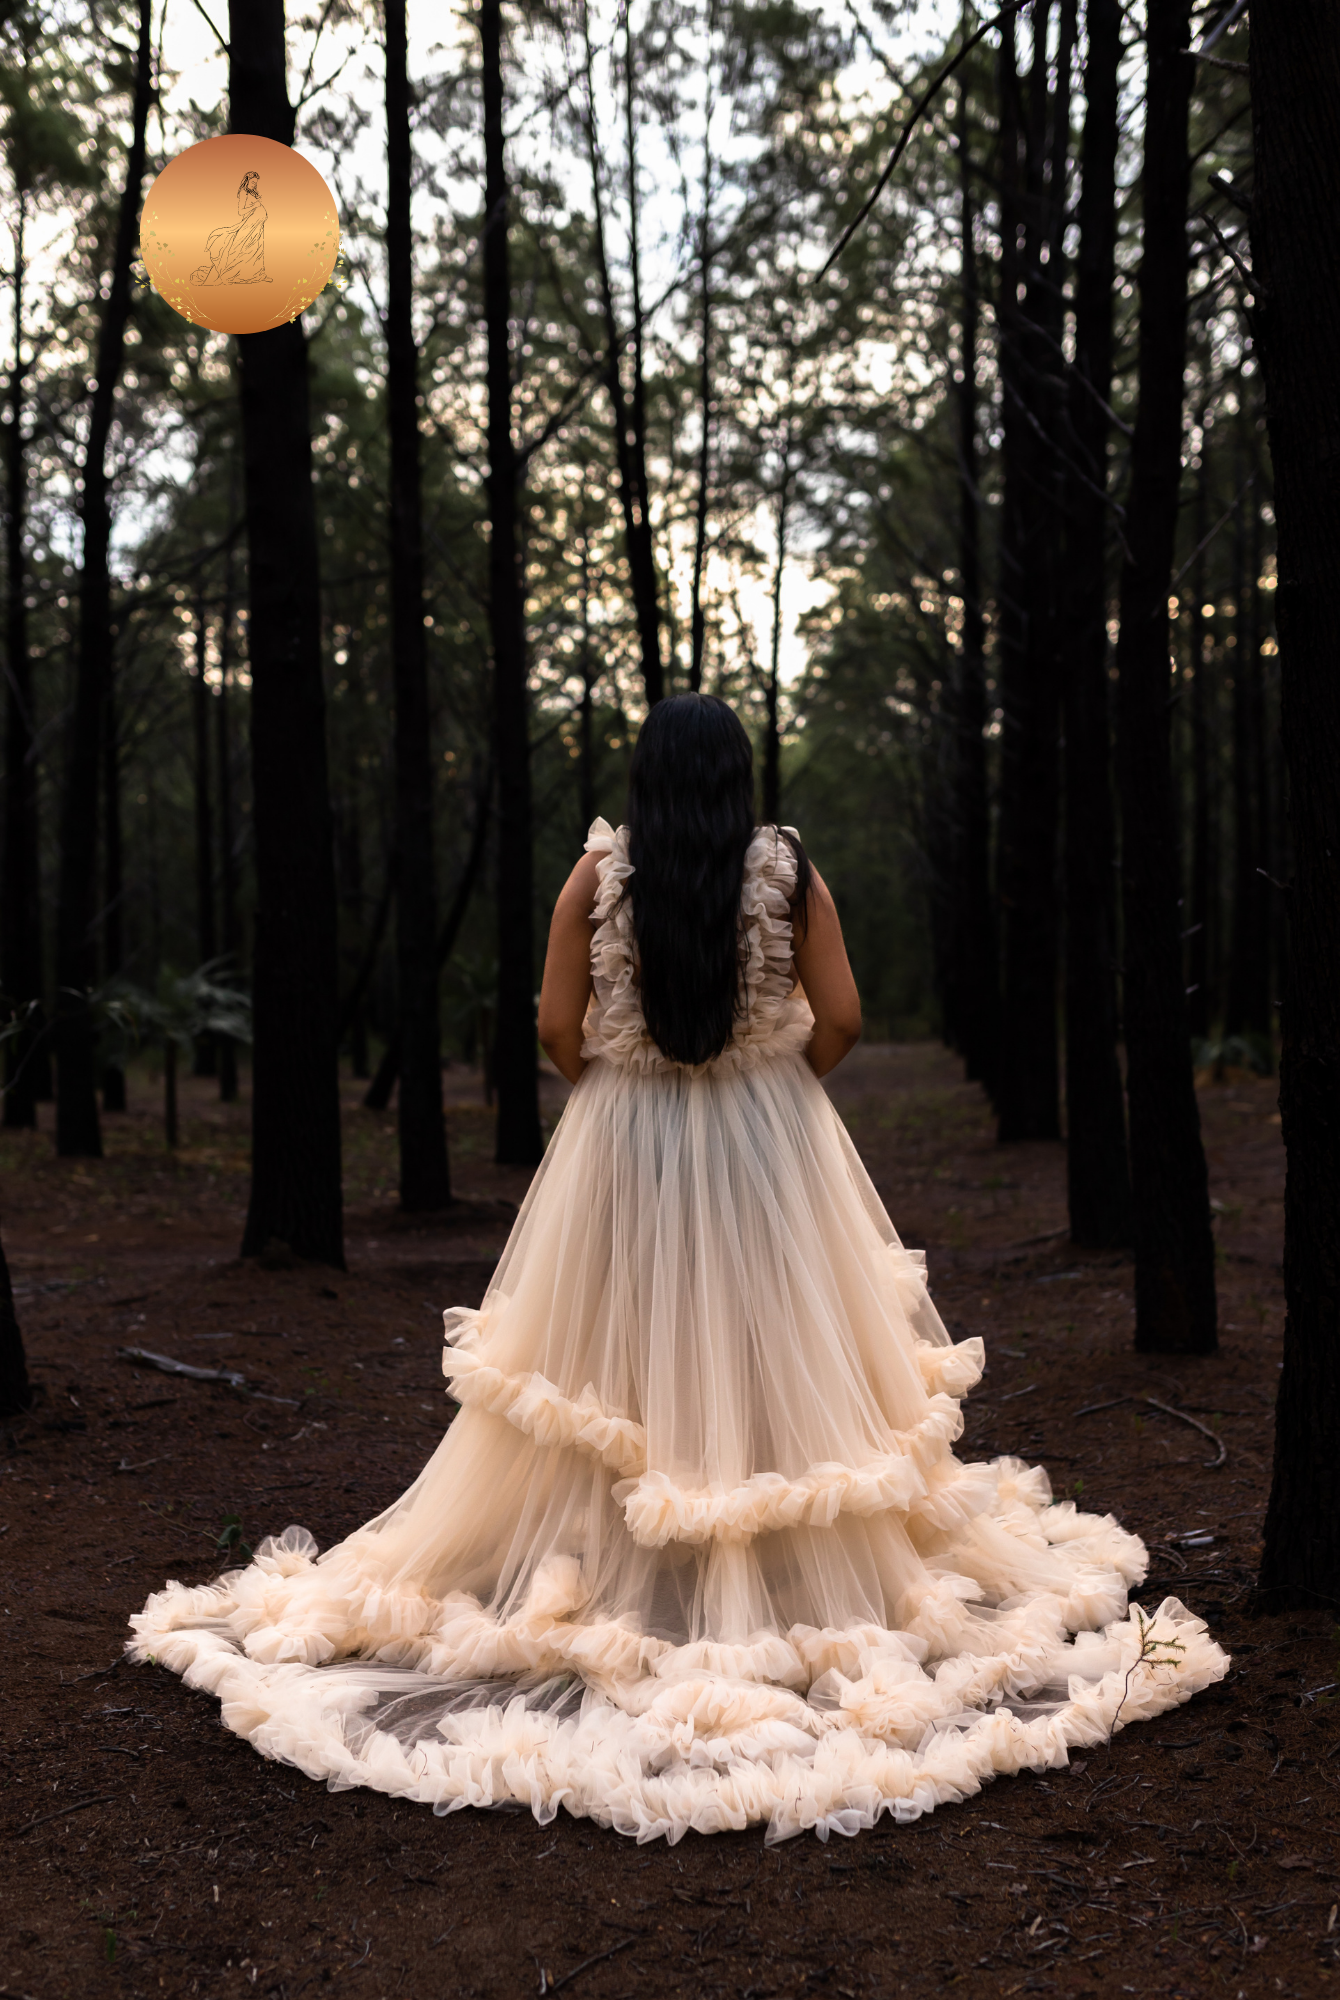 Photoshoot Dresses